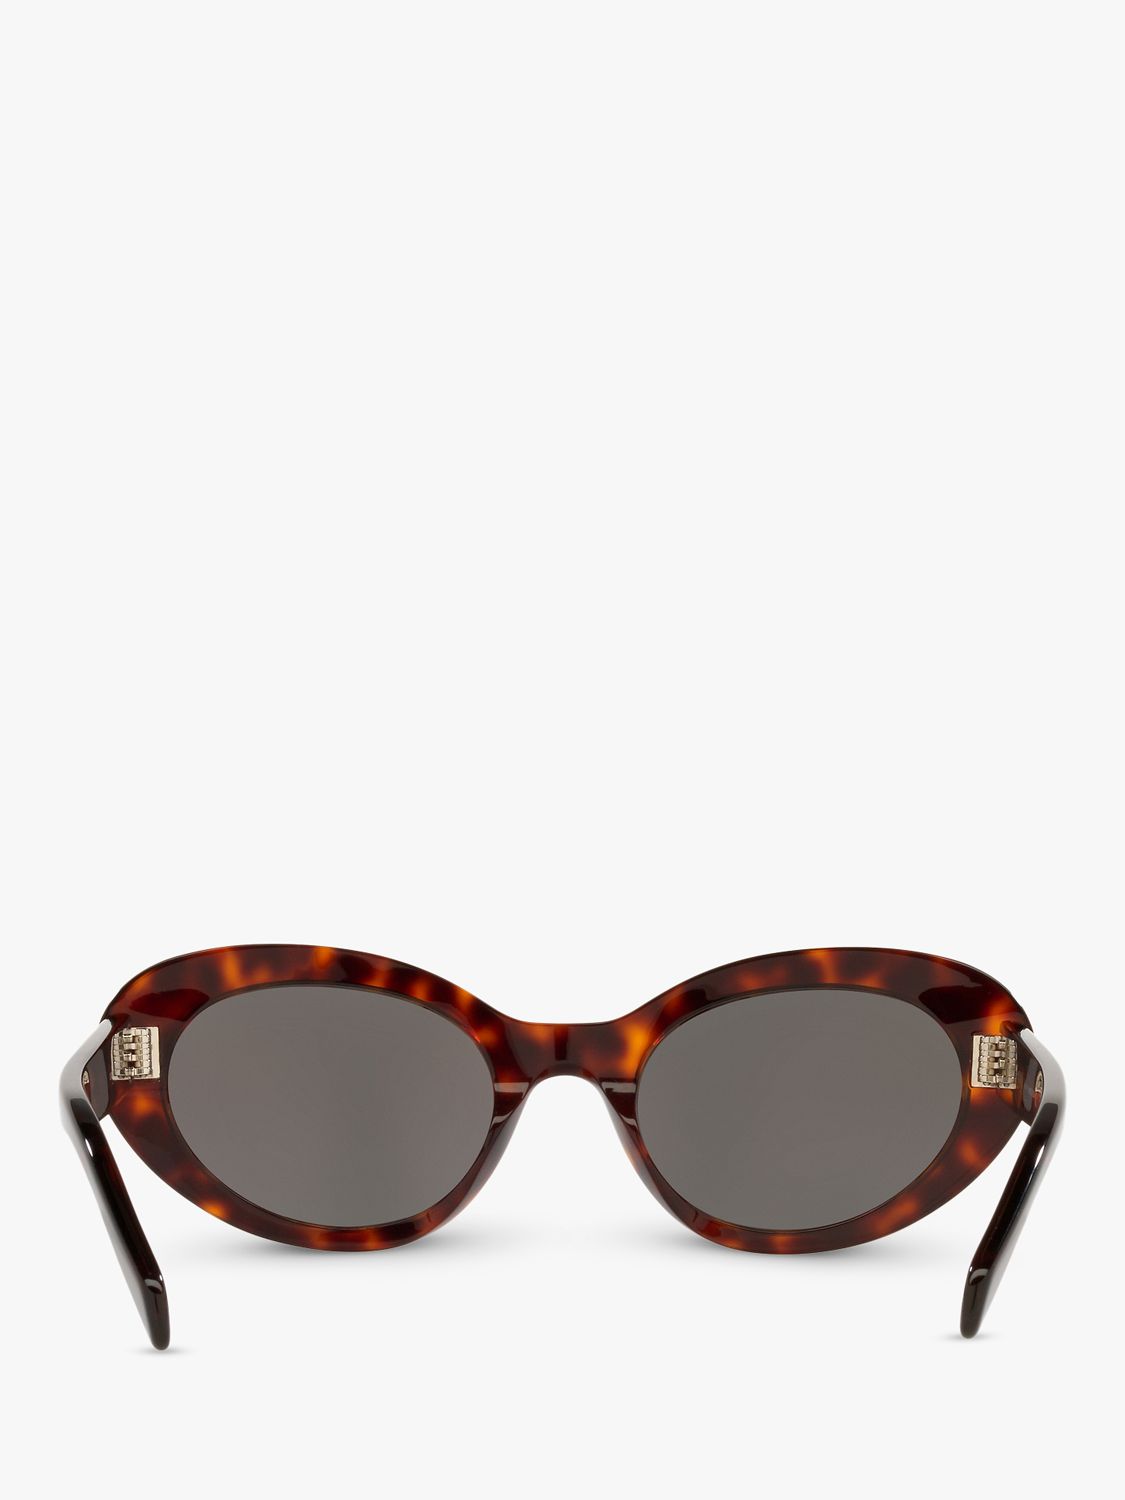 Celine CL40193I Women's Cat's Eye Sunglasses, Black Tortoise/Grey